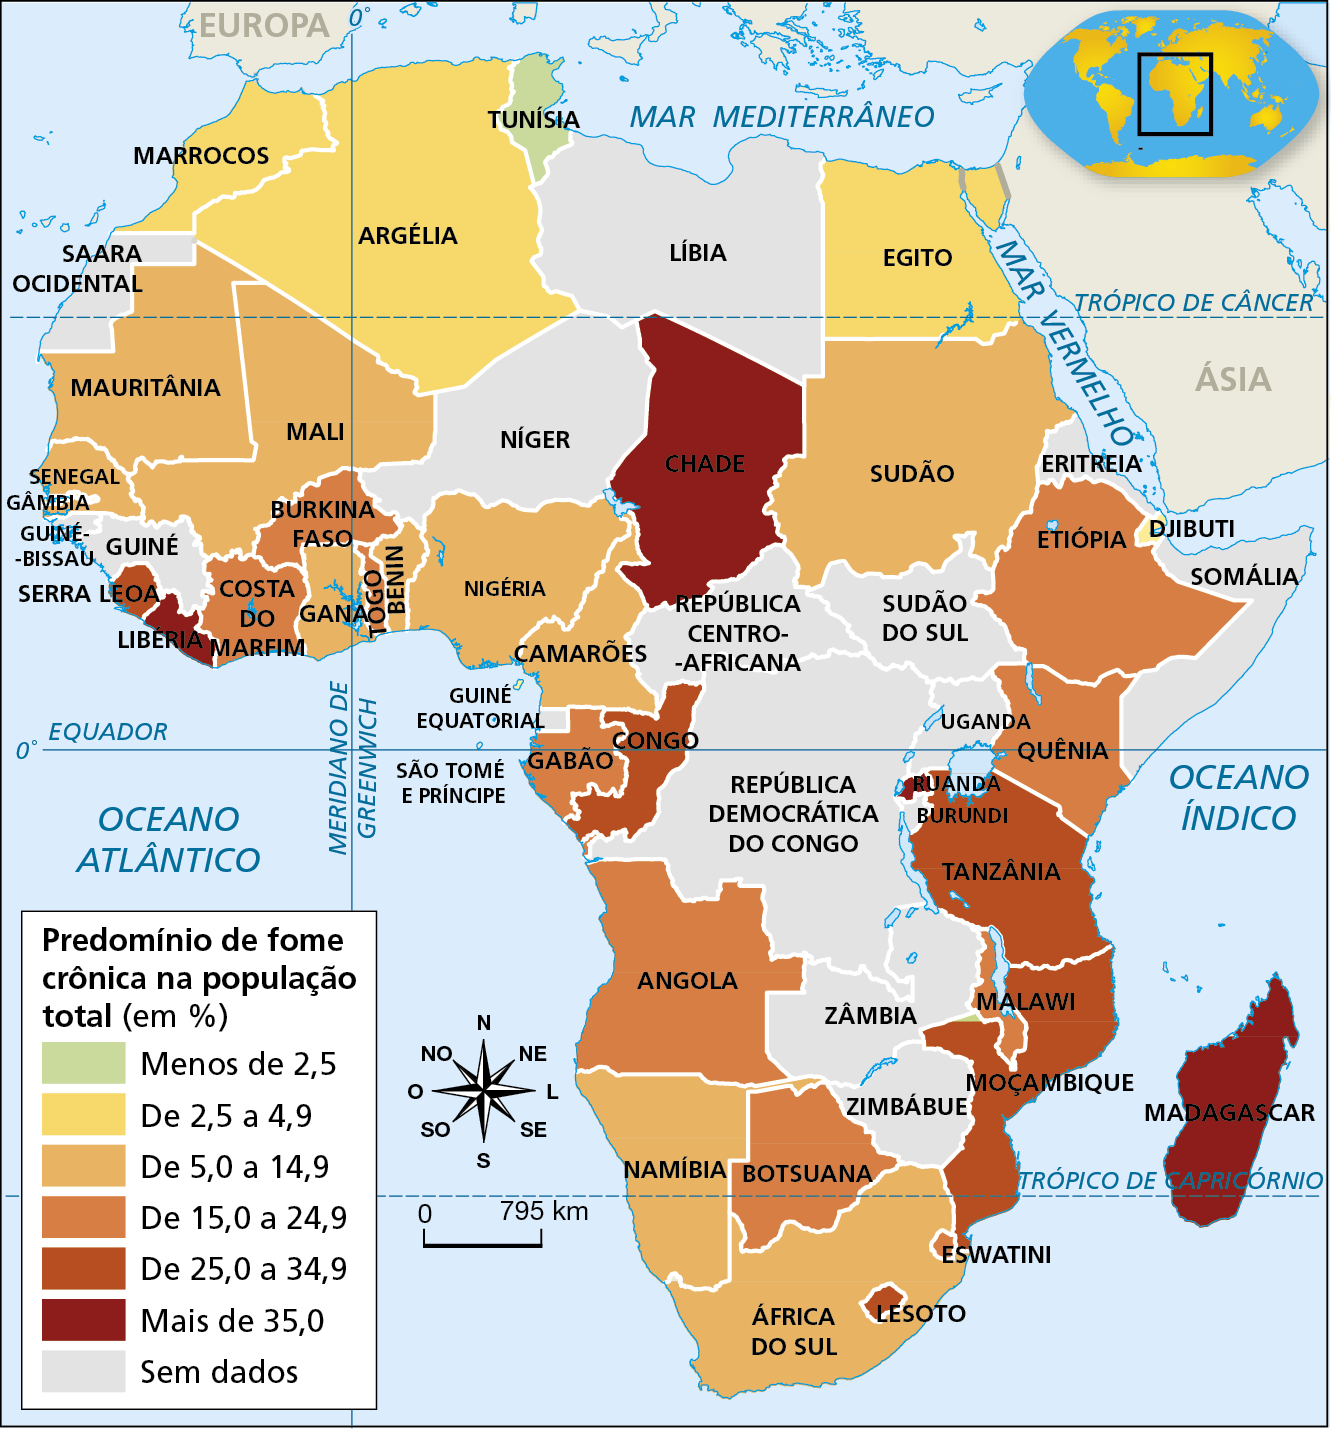 Mapa. África: fome crônica (de 2017 a 2019)
Mapa temático da África com indicação do predomínio de fome crônica na população total dos países, em porcentagem. Há seis categorias, diferenciadas por cores que variam do verde claro para o vermelho, sendo os tons mais claros para representar valores menores e os mais escuros para representar valores maiores. Há também uma categoria para representar países sem dados disponíveis sobre o tema.
Predomínio de menos de 2,5 por cento: Tunísia. 
Predomínio de 2,5 a 4,9 por cento: Gâmbia, Marrocos, Argélia, Egito, Djibuti. 
Predomínio de 5,0 a 14,9 por cento: Mauritânia, Mali, Senegal, Gana, Benin, Nigéria, Camarões, Sudão, Namíbia, África do Sul. 
Predomínio de 15,0 a 24,9 por cento: Costa do Marfim, Burkina Faso, Togo, Gabão, Angola, Botsuana, Quênia, Etiópia, Malawi, Eswatini. 
Predomínio de 25,0 a 34,9 por cento: Moçambique, Tanzânia, Serra Leoa. 
Predomínio de mais de 35,0: Libéria, Chade, Madagascar, Ruanda. 
Sem dados: Saara Ocidental, Guiné, Guiné-Bissau, Níger, Líbia, Sudão do Sul, Eritreia, Somália, República Centro-Africana, República Democrática do Congo, Zâmbia, Uganda, Burundi, Zimbábue. 
Na parte inferior esquerda rosa dos ventos e escala de 0 a 795 quilômetros.